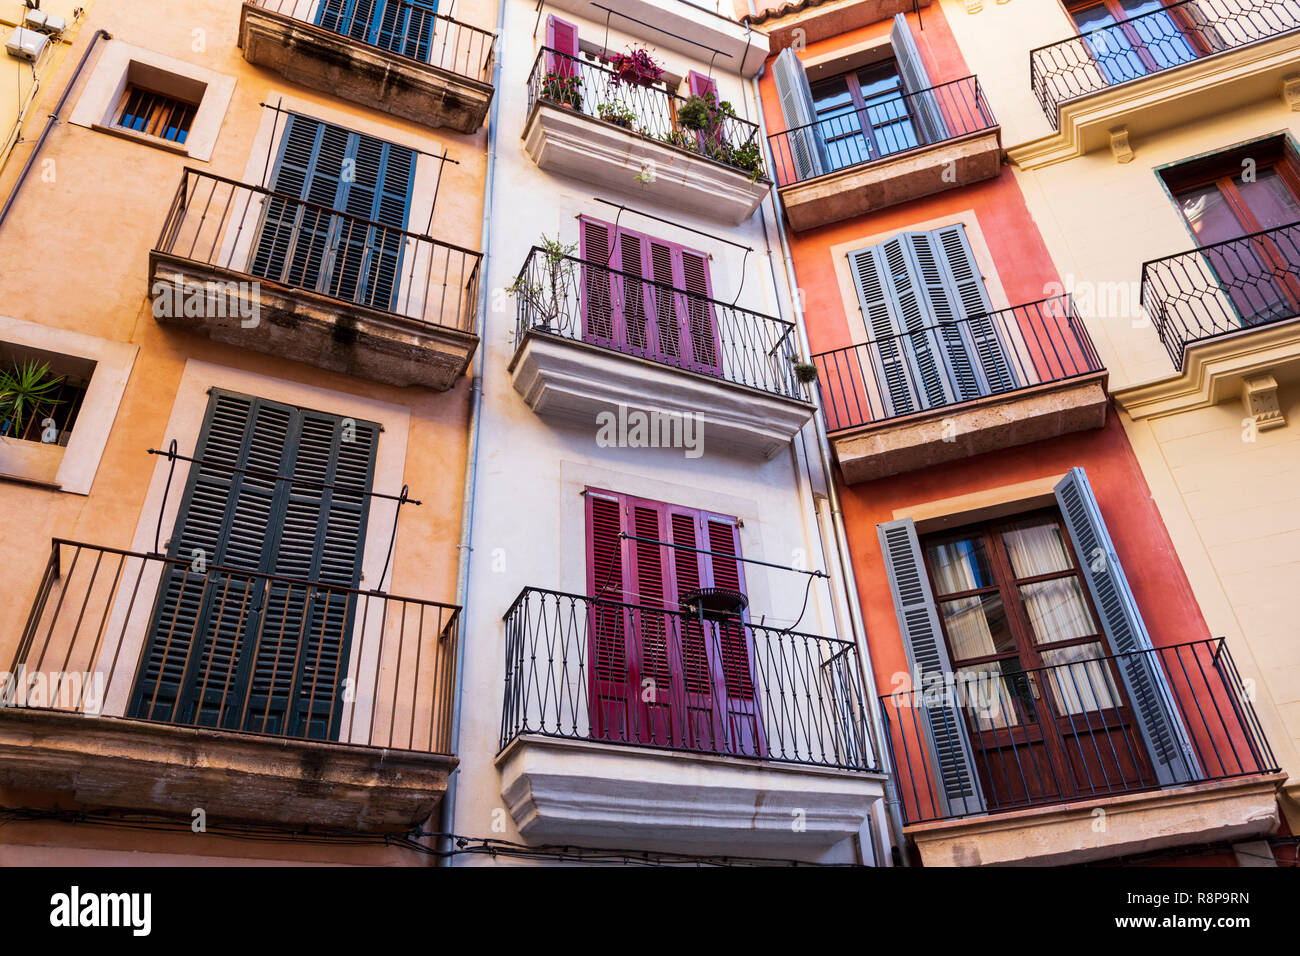 Façade avec volets devant les fenêtres à Palma, Palma de Mallorca, Mallorca, Majorque, Îles Baléares, Baléares, Espagne, Europe Banque D'Images